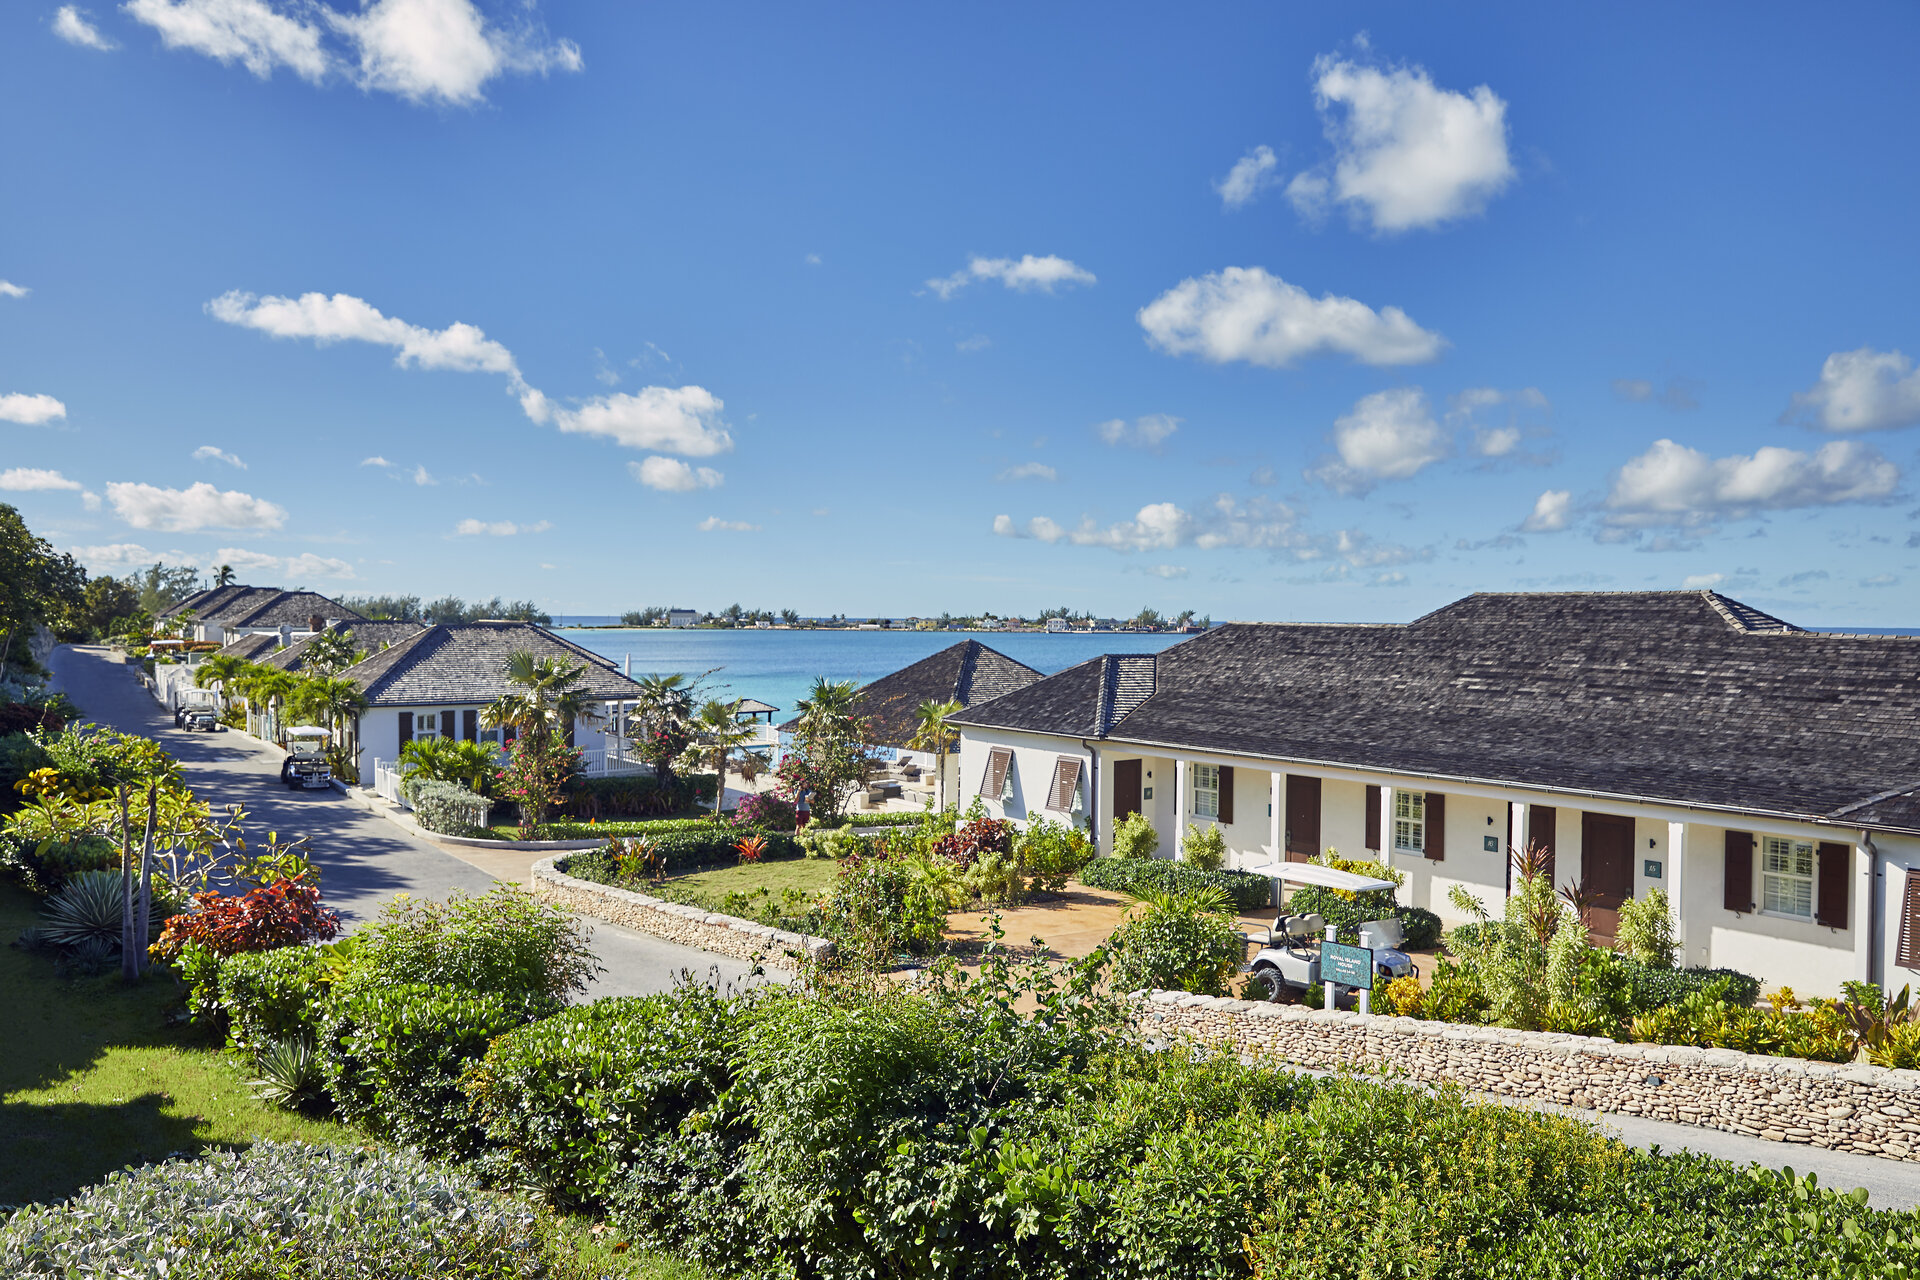 Oceanfront bungalow resort